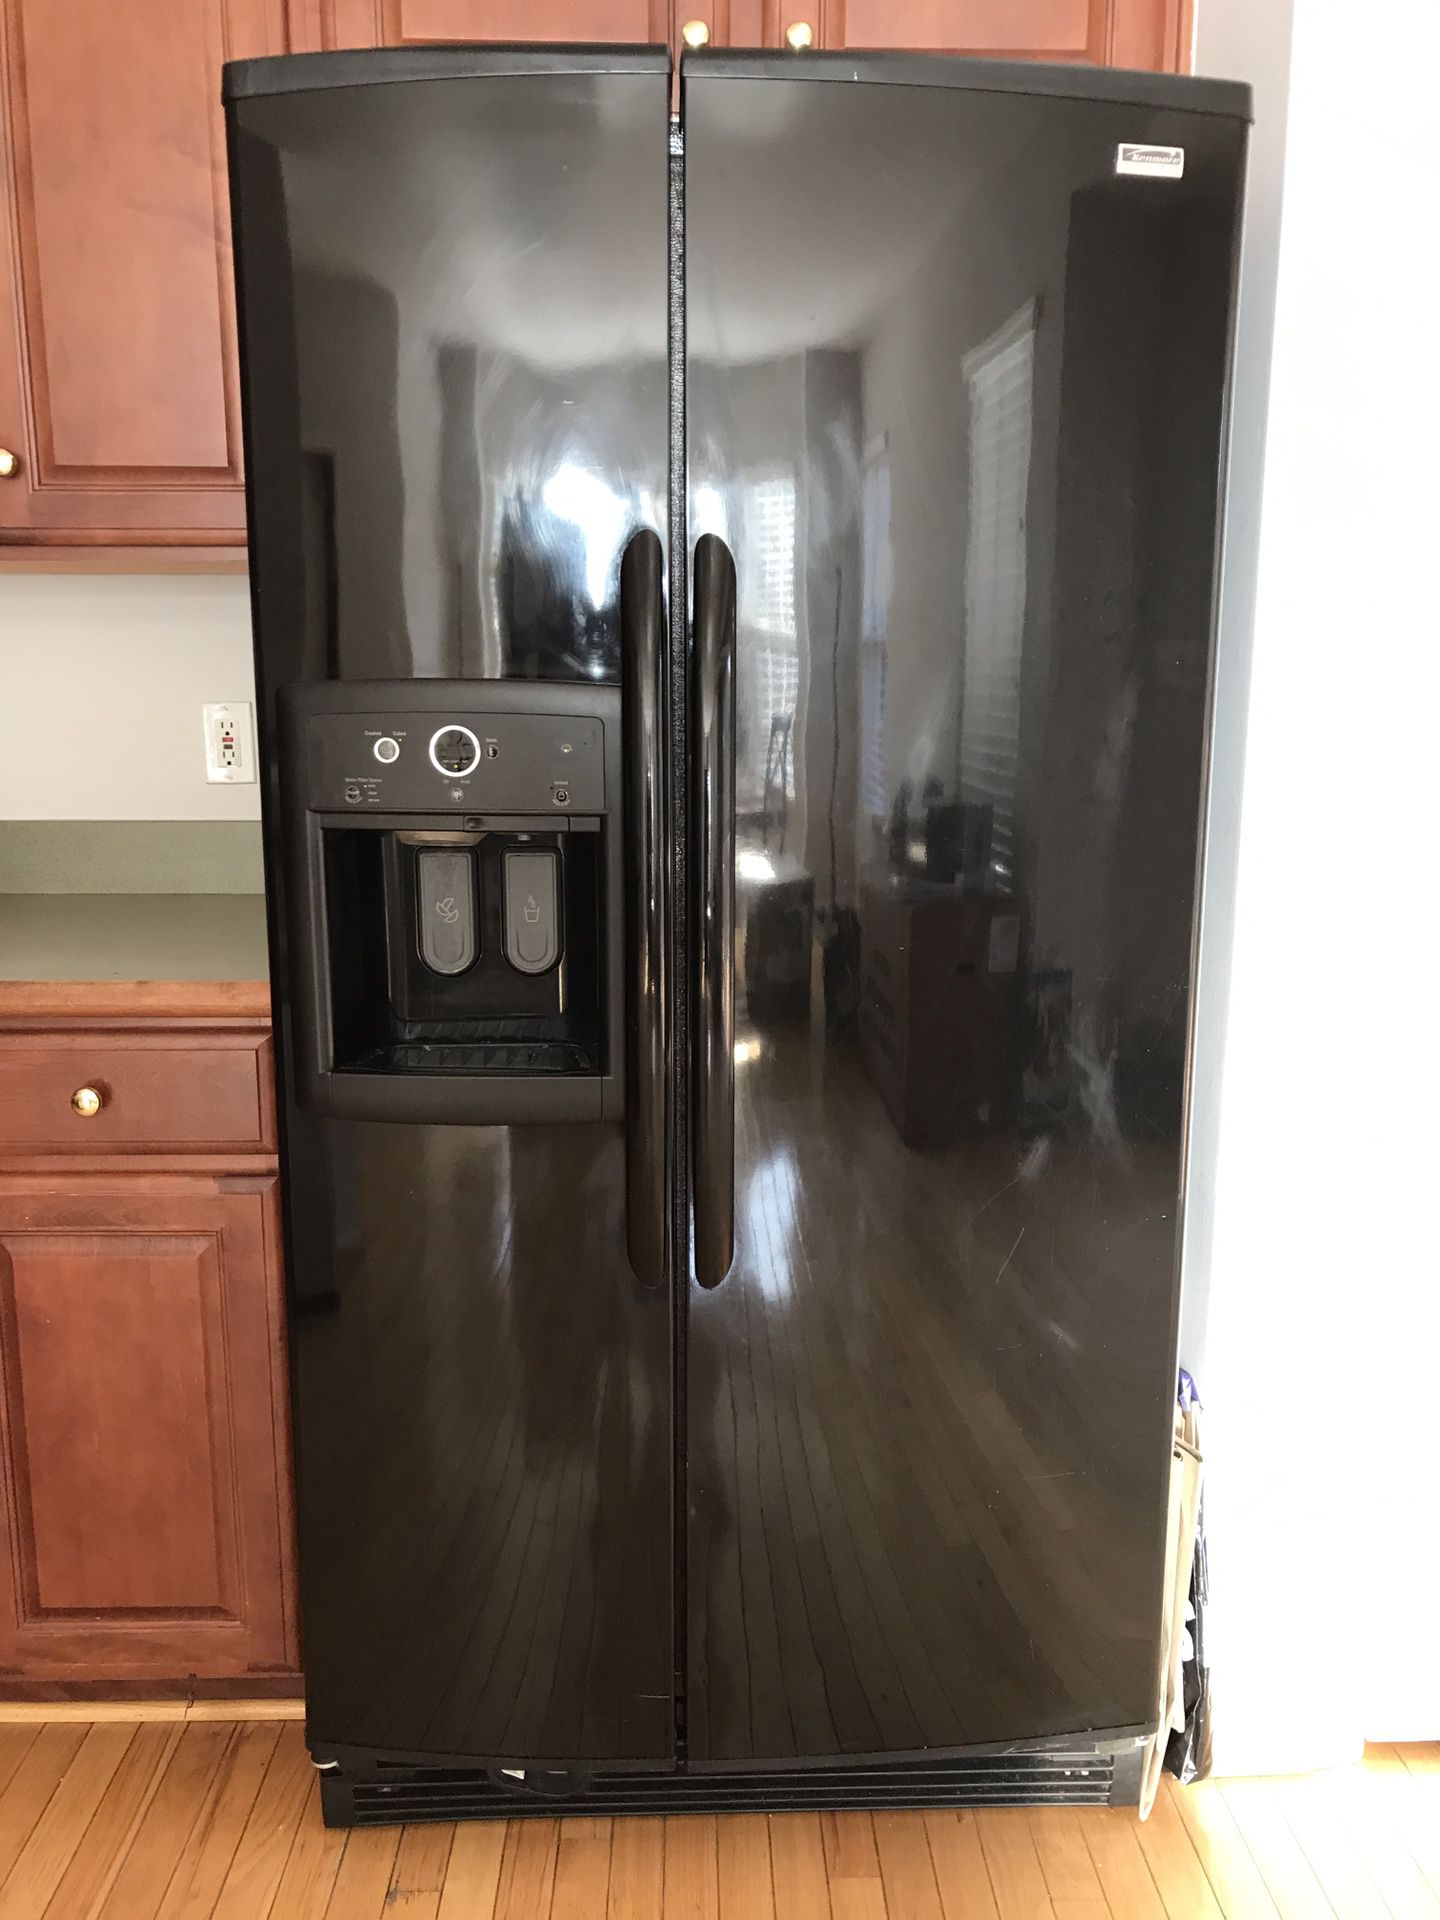 Kenmore Elite Refrigerator w/ water & ice maker in door panel!